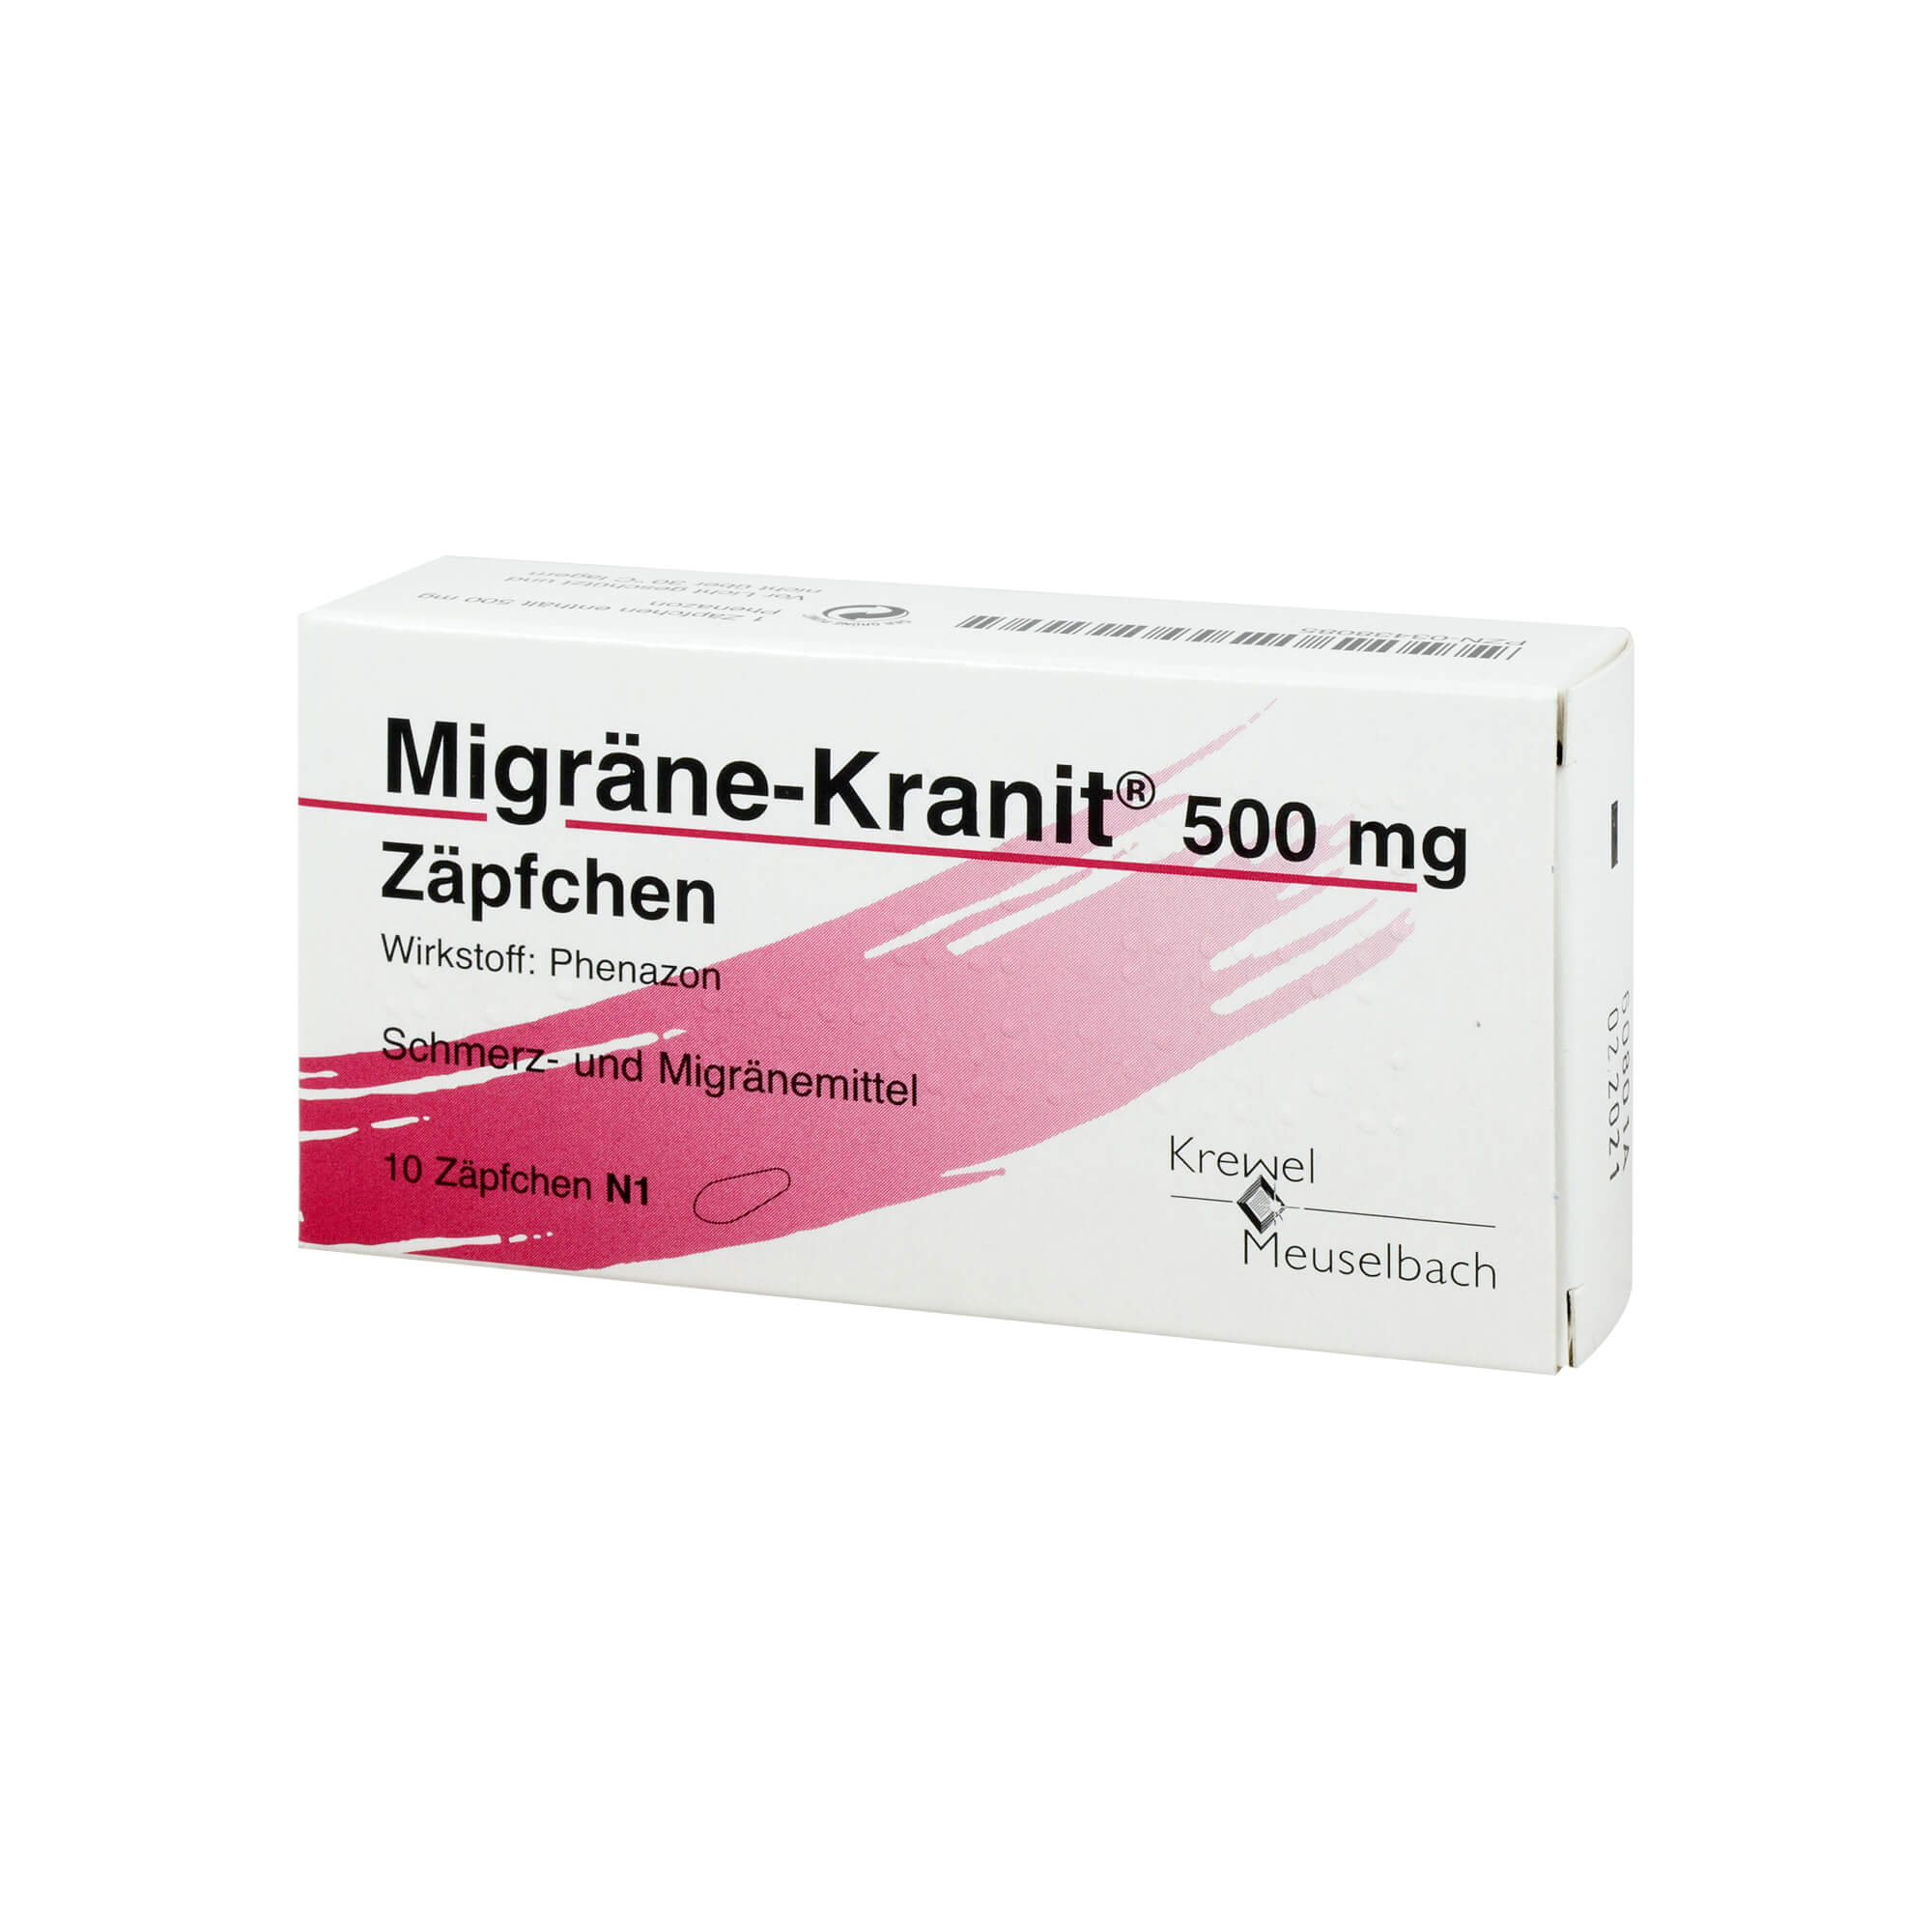 Zur akuten Behandlung der Kopfschmerzen von Migräneanfällen mit und ohne Aura und bei leichten bis mäßig starken Schmerzen.